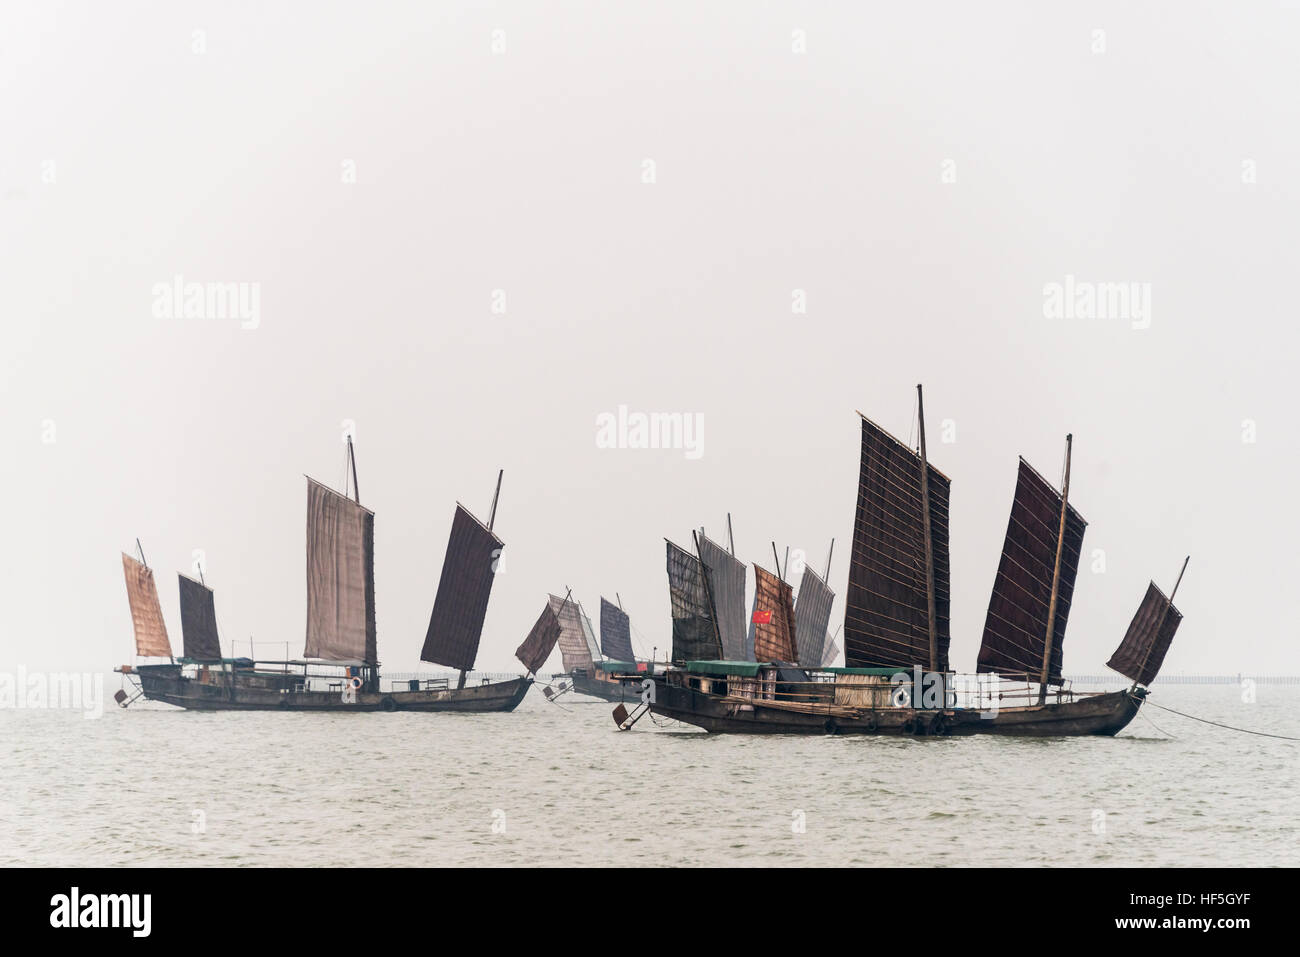 Junk barche sul lago Taihu, Huzhou, provincia dello Jiangsu, Cina Foto Stock